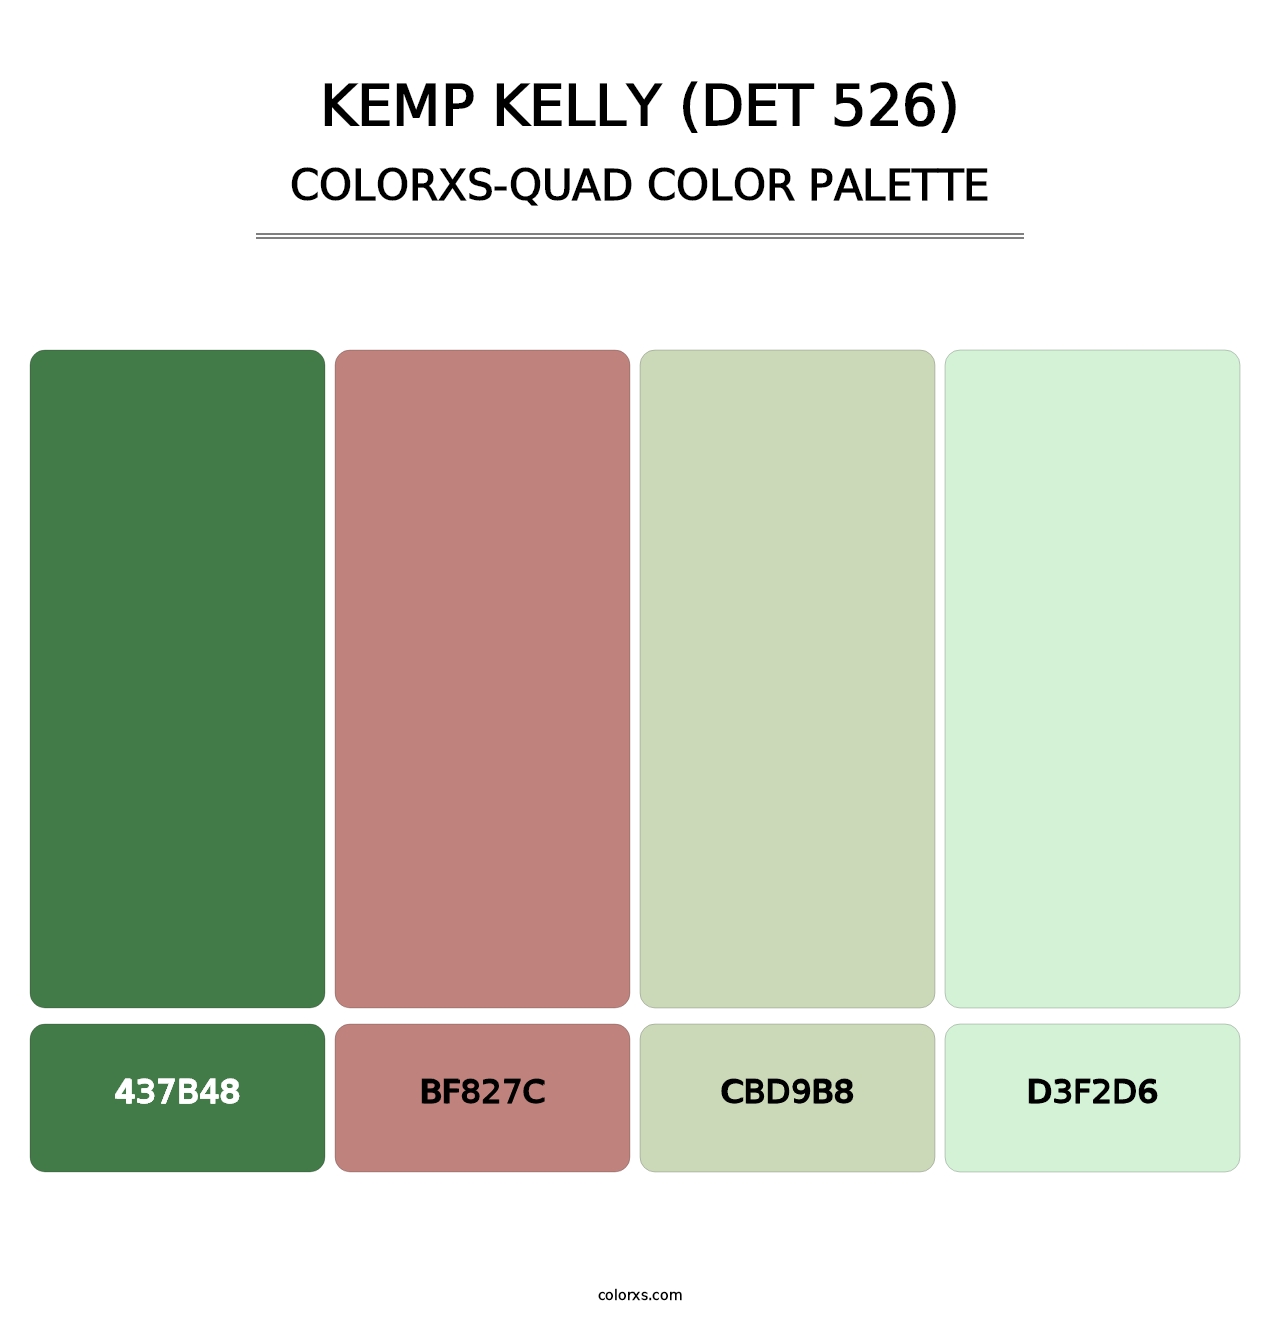 Kemp Kelly (DET 526) - Colorxs Quad Palette